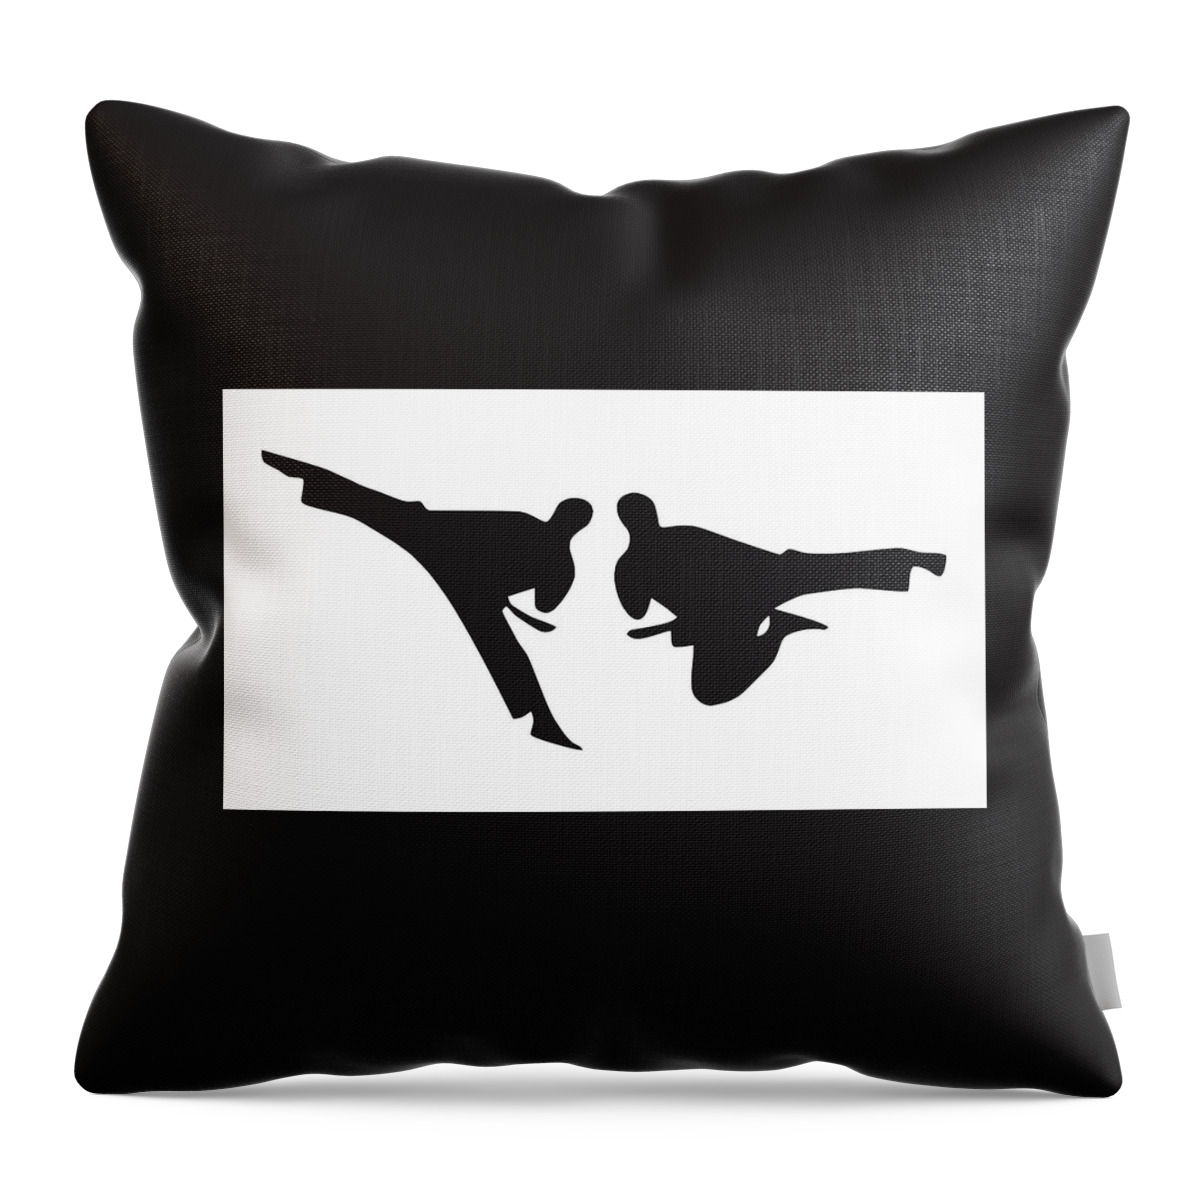 Karate Throw Pillow featuring the digital art Karate Is An Art by Nancy Ayanna Wyatt